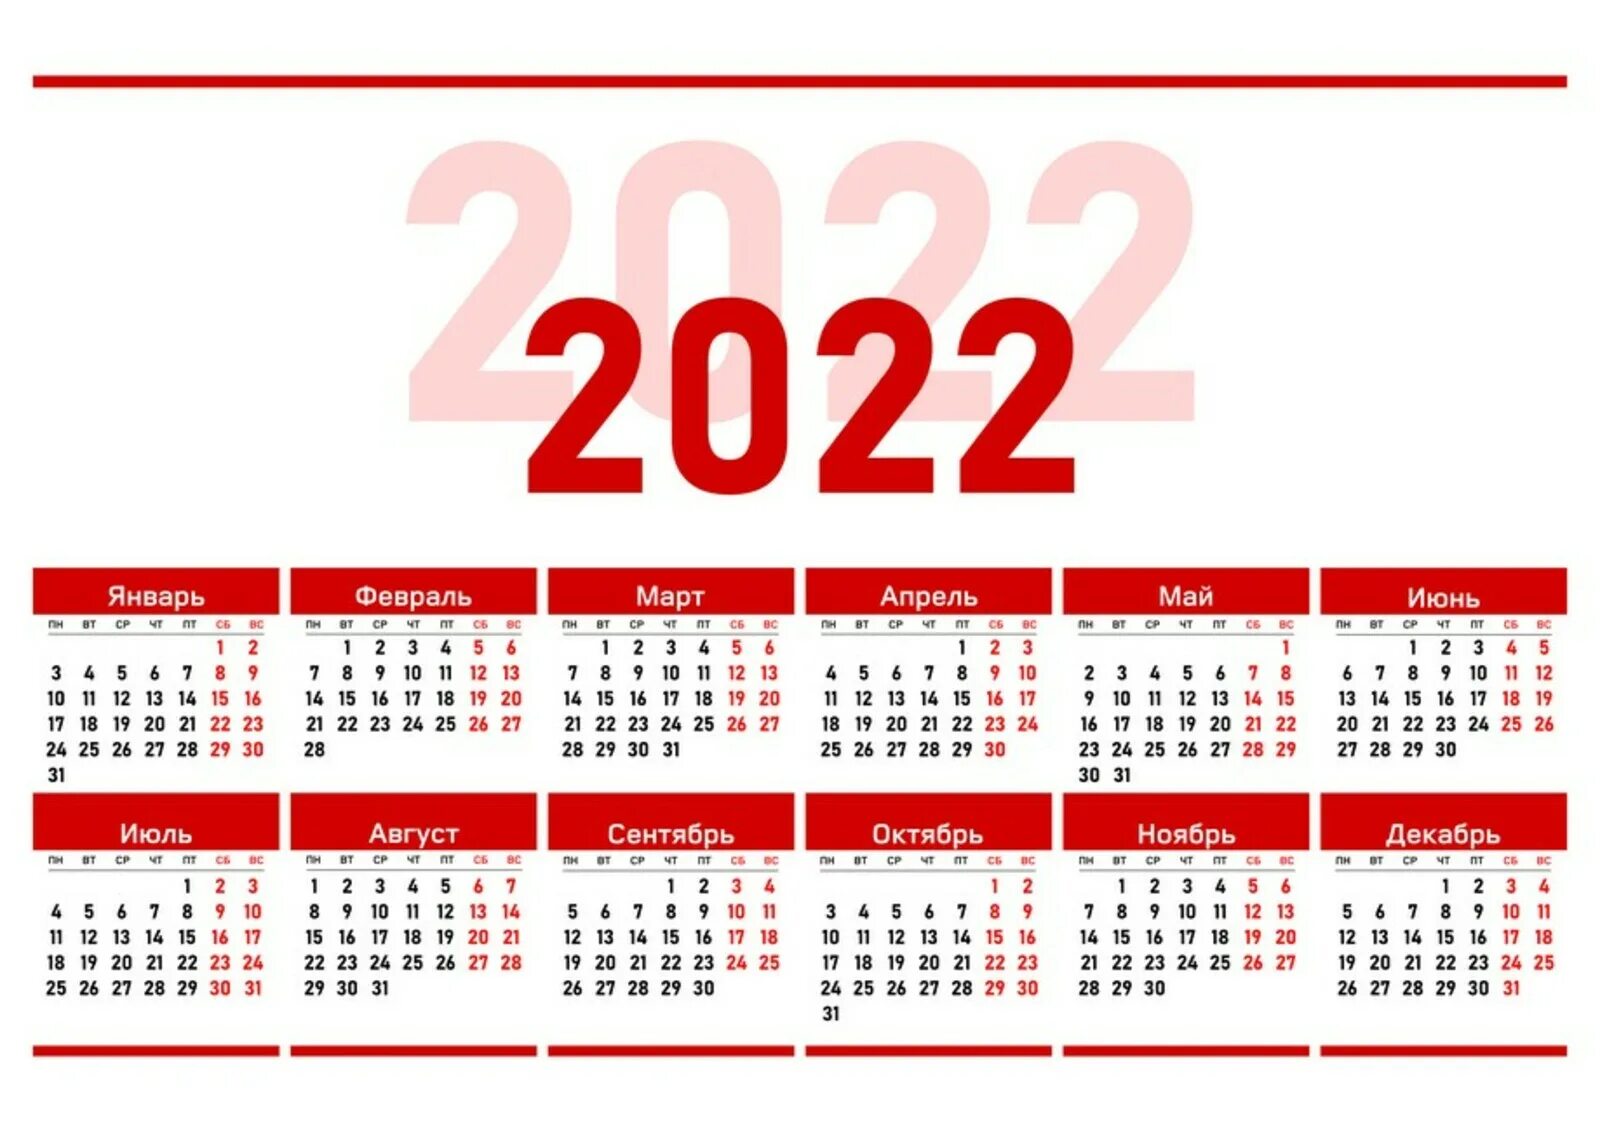 Как мы отдыхаем на ноябрьские праздники 2022. Производственный календарь 2022. Календарь на 2022 год ЛНР. Официальные праздники 2022 года в России. Выходные дни в 2022 году в России.